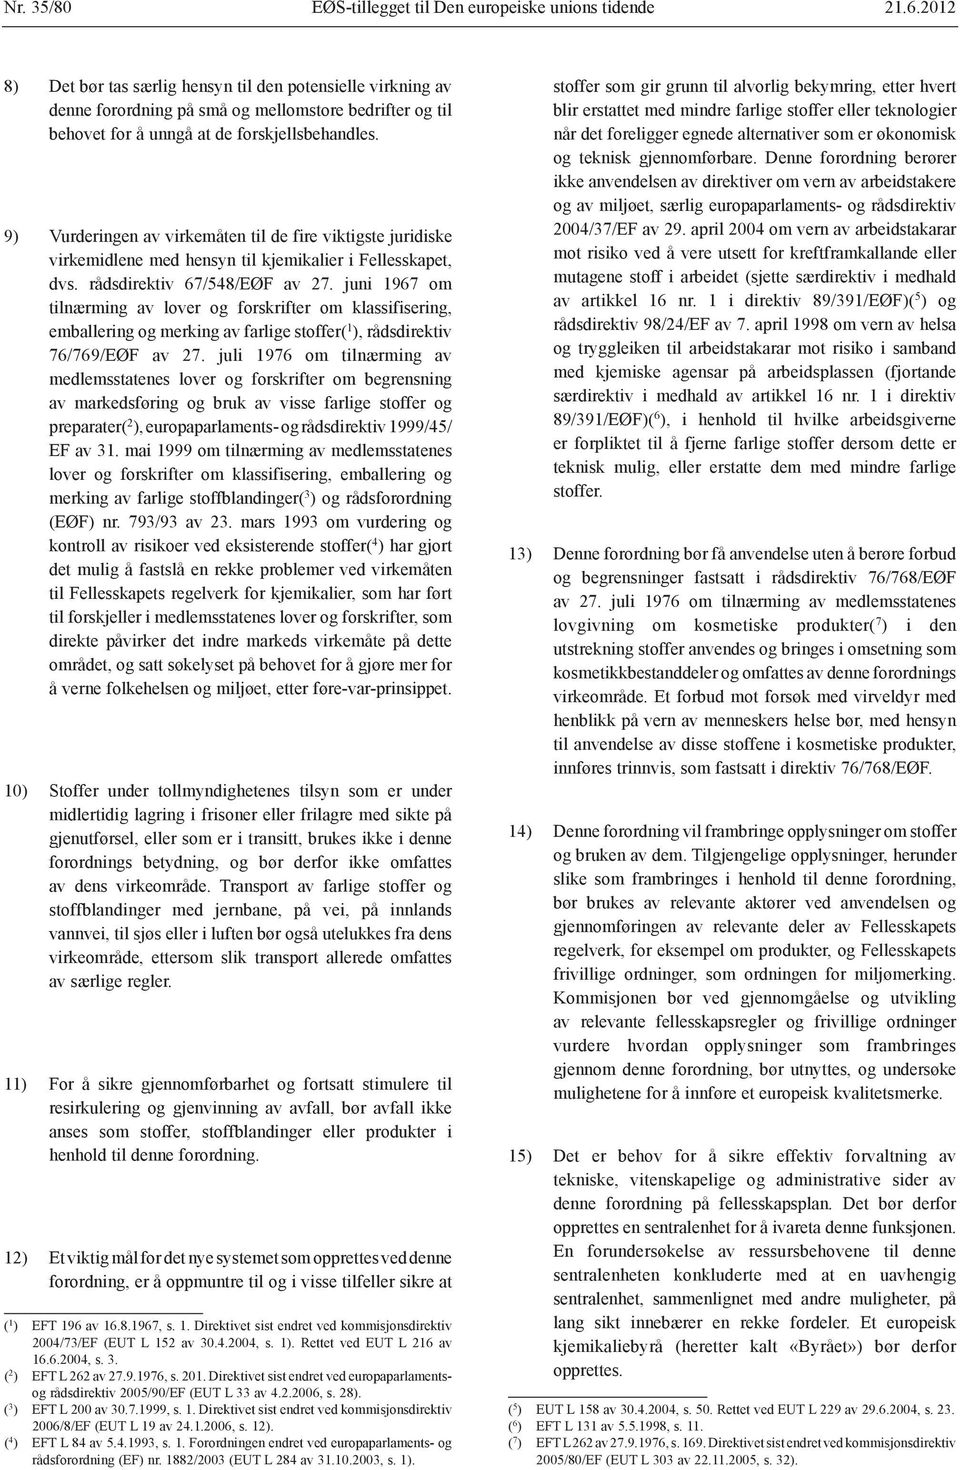 9) Vurderingen av virkemåten til de fire viktigste juridiske virkemidlene med hensyn til kjemikalier i Fellesskapet, dvs. rådsdirektiv 67/548/EØF av 27.